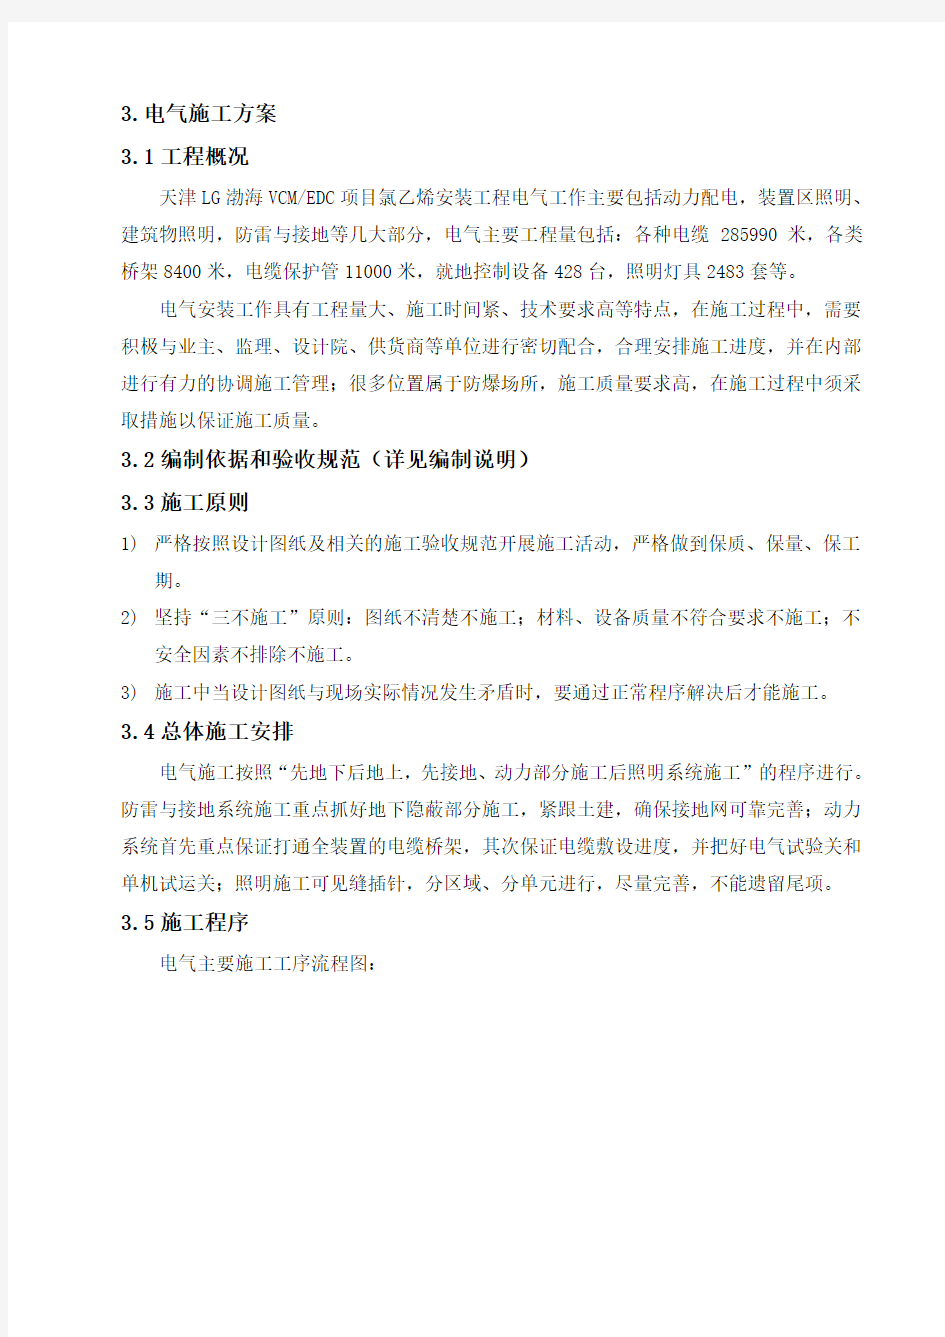 天津LG渤海化学有限公司烧碱装置技术标1